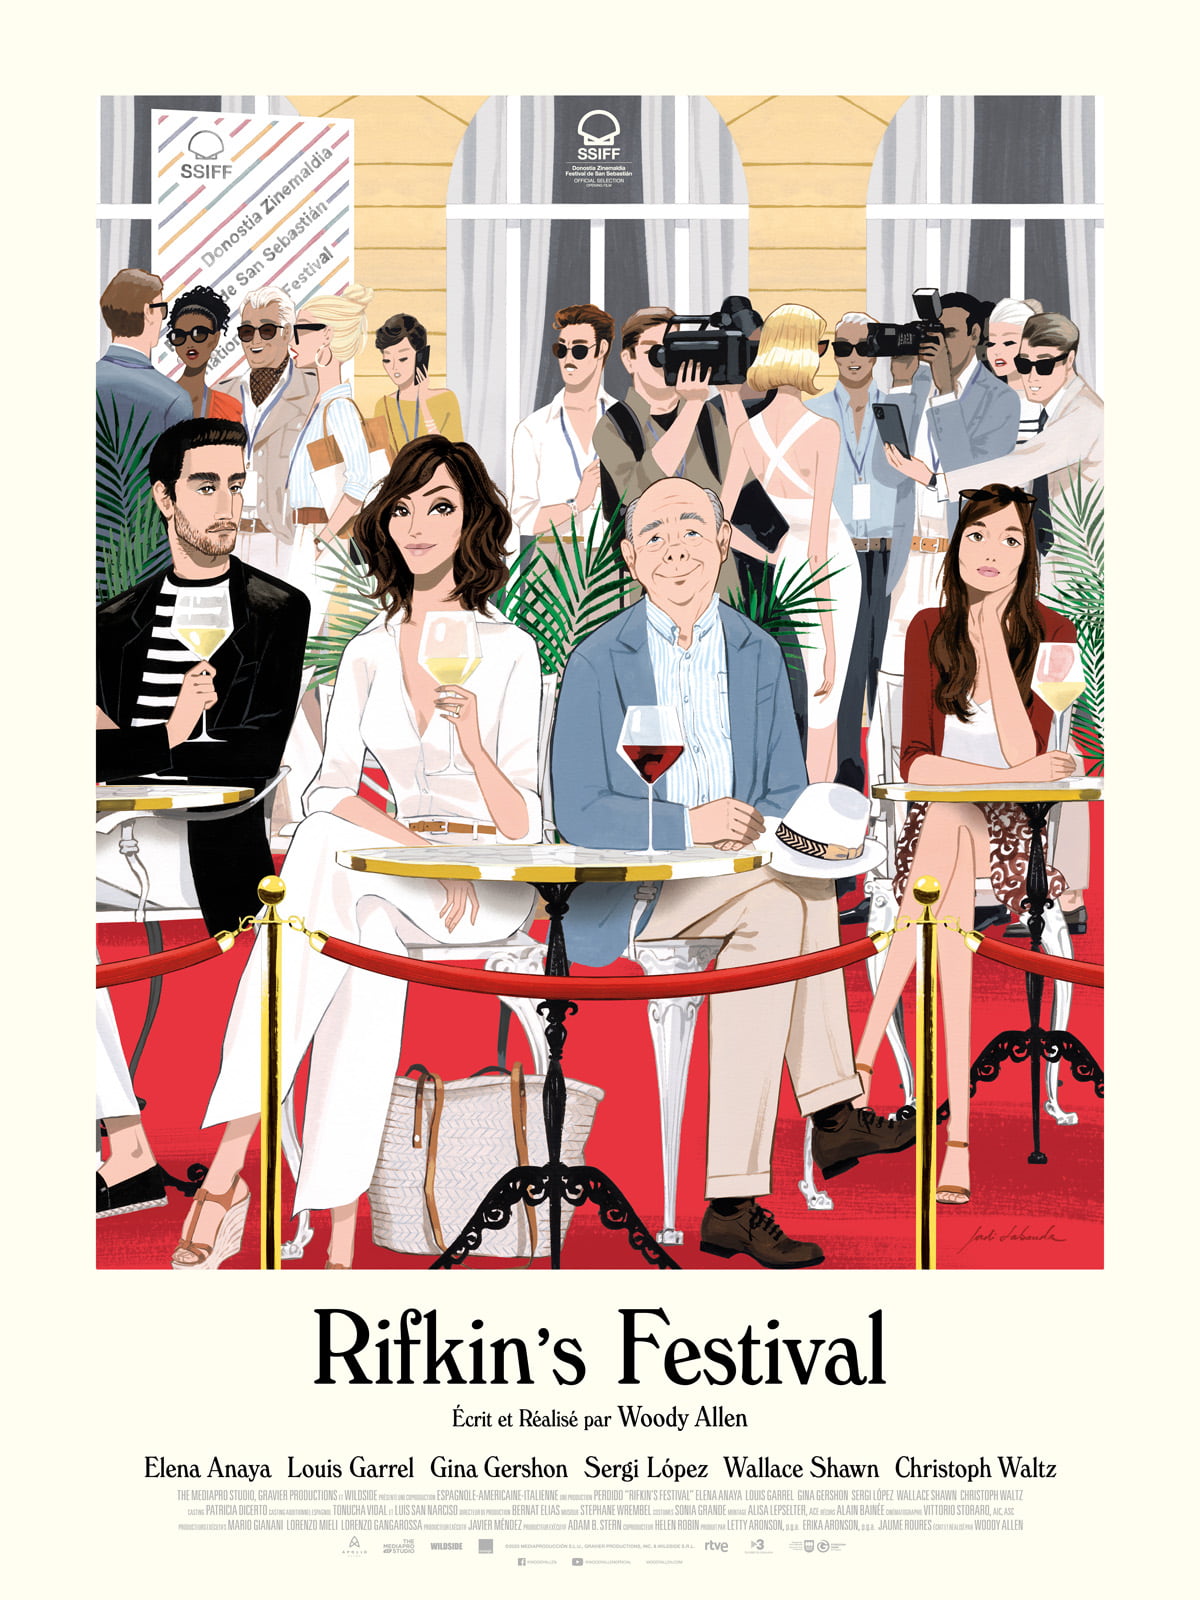 Rifkin's festival"